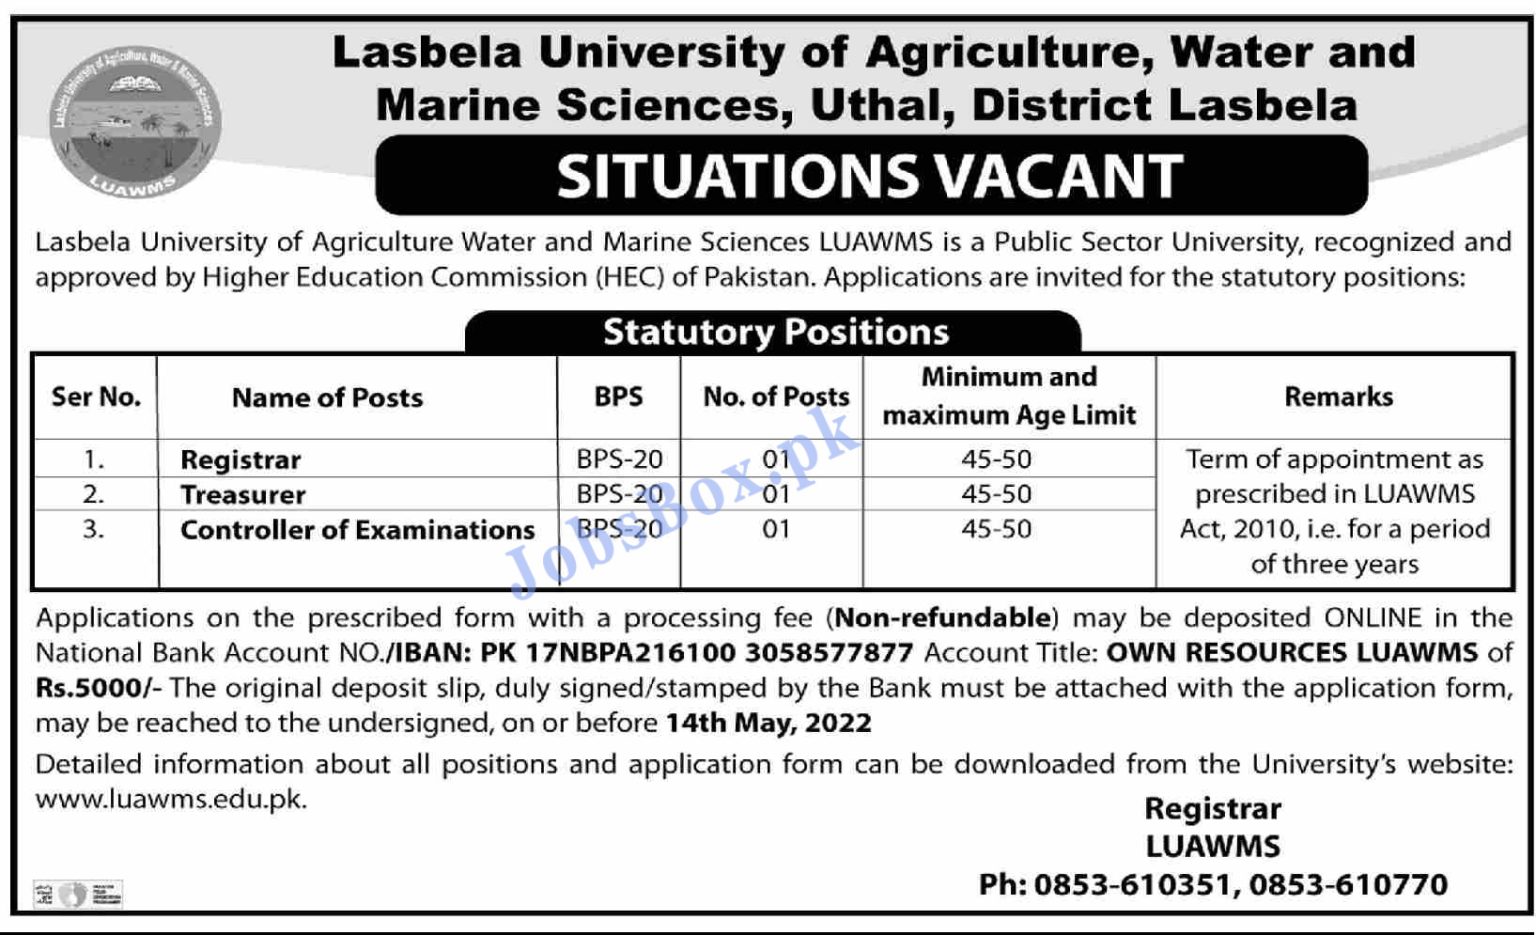 Lasbela University Jobs 2022 in Pakistan - www.hec.gov.pk - www.luawms.edu.pk